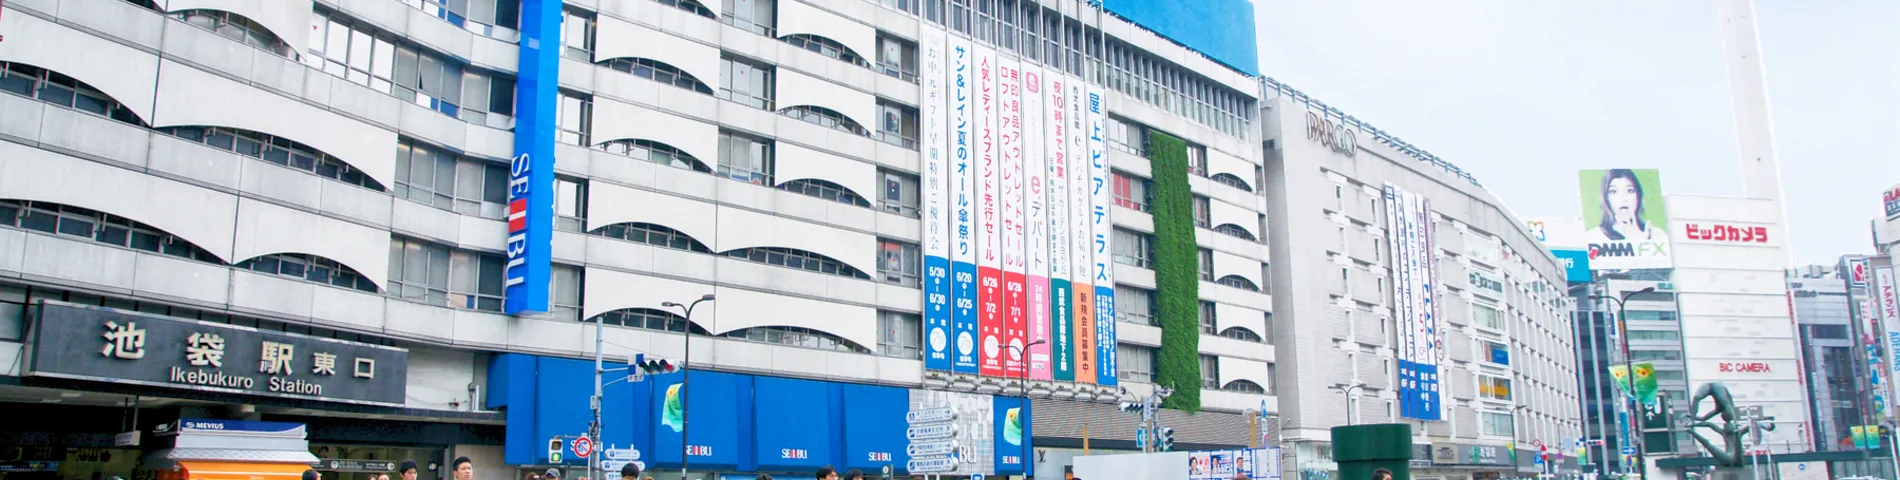 ISI Language School - Ikebukuro Campus รูปภาพ 1